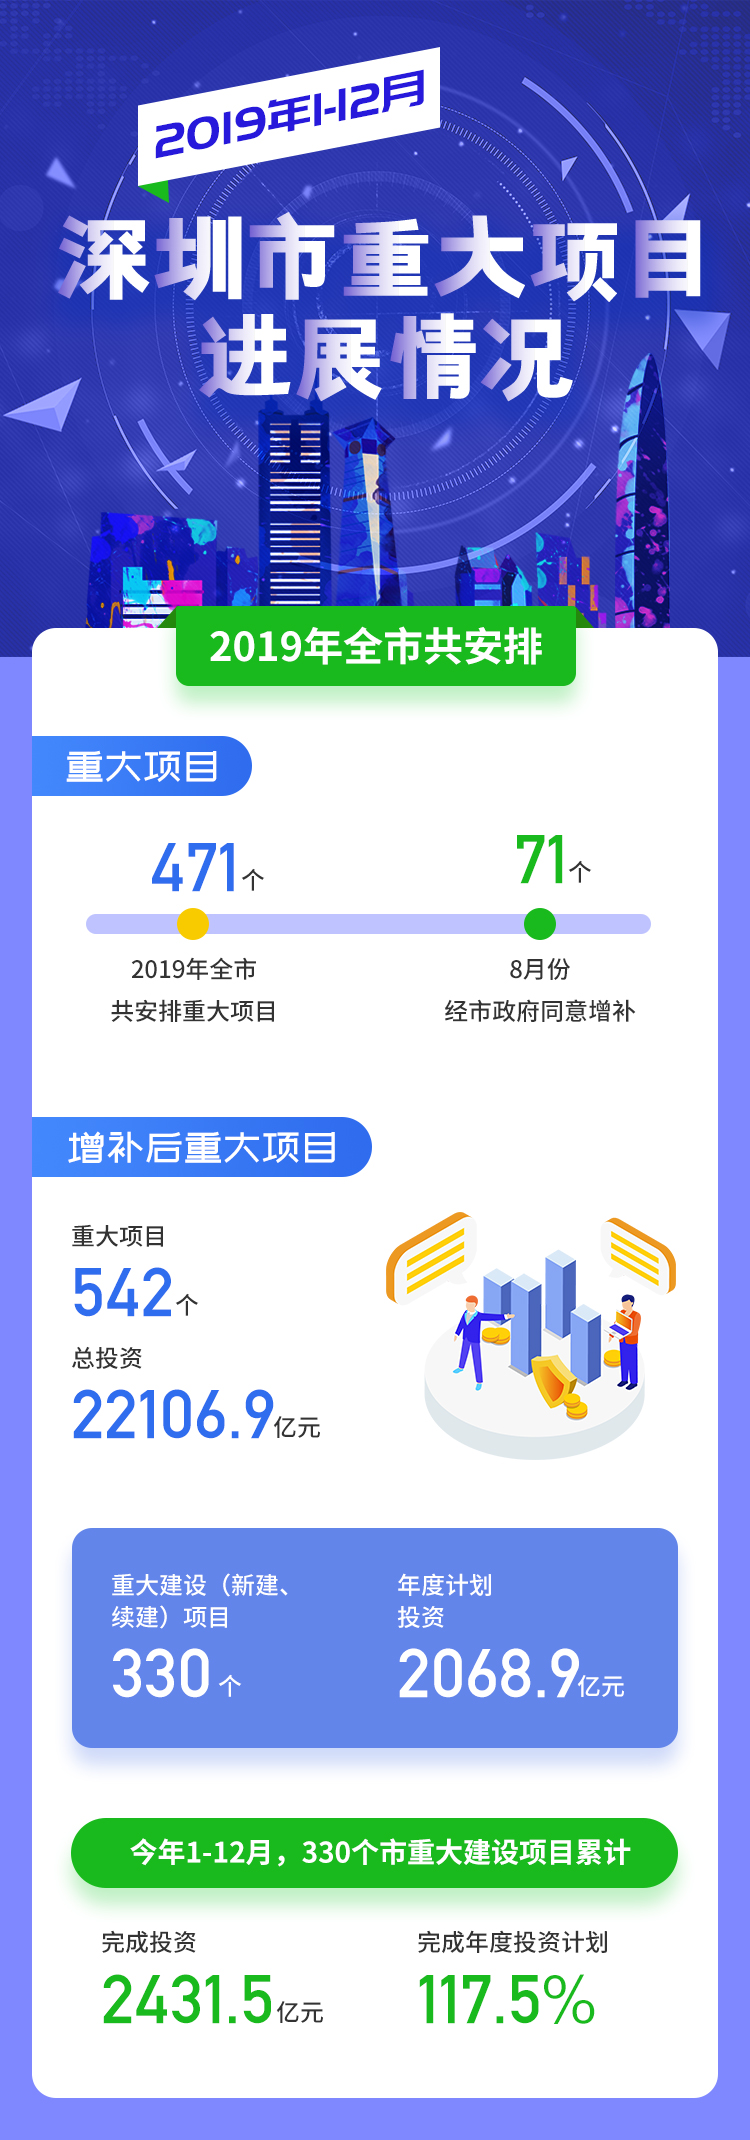 2019年1-12月深圳市重大项目进展情况.jpg